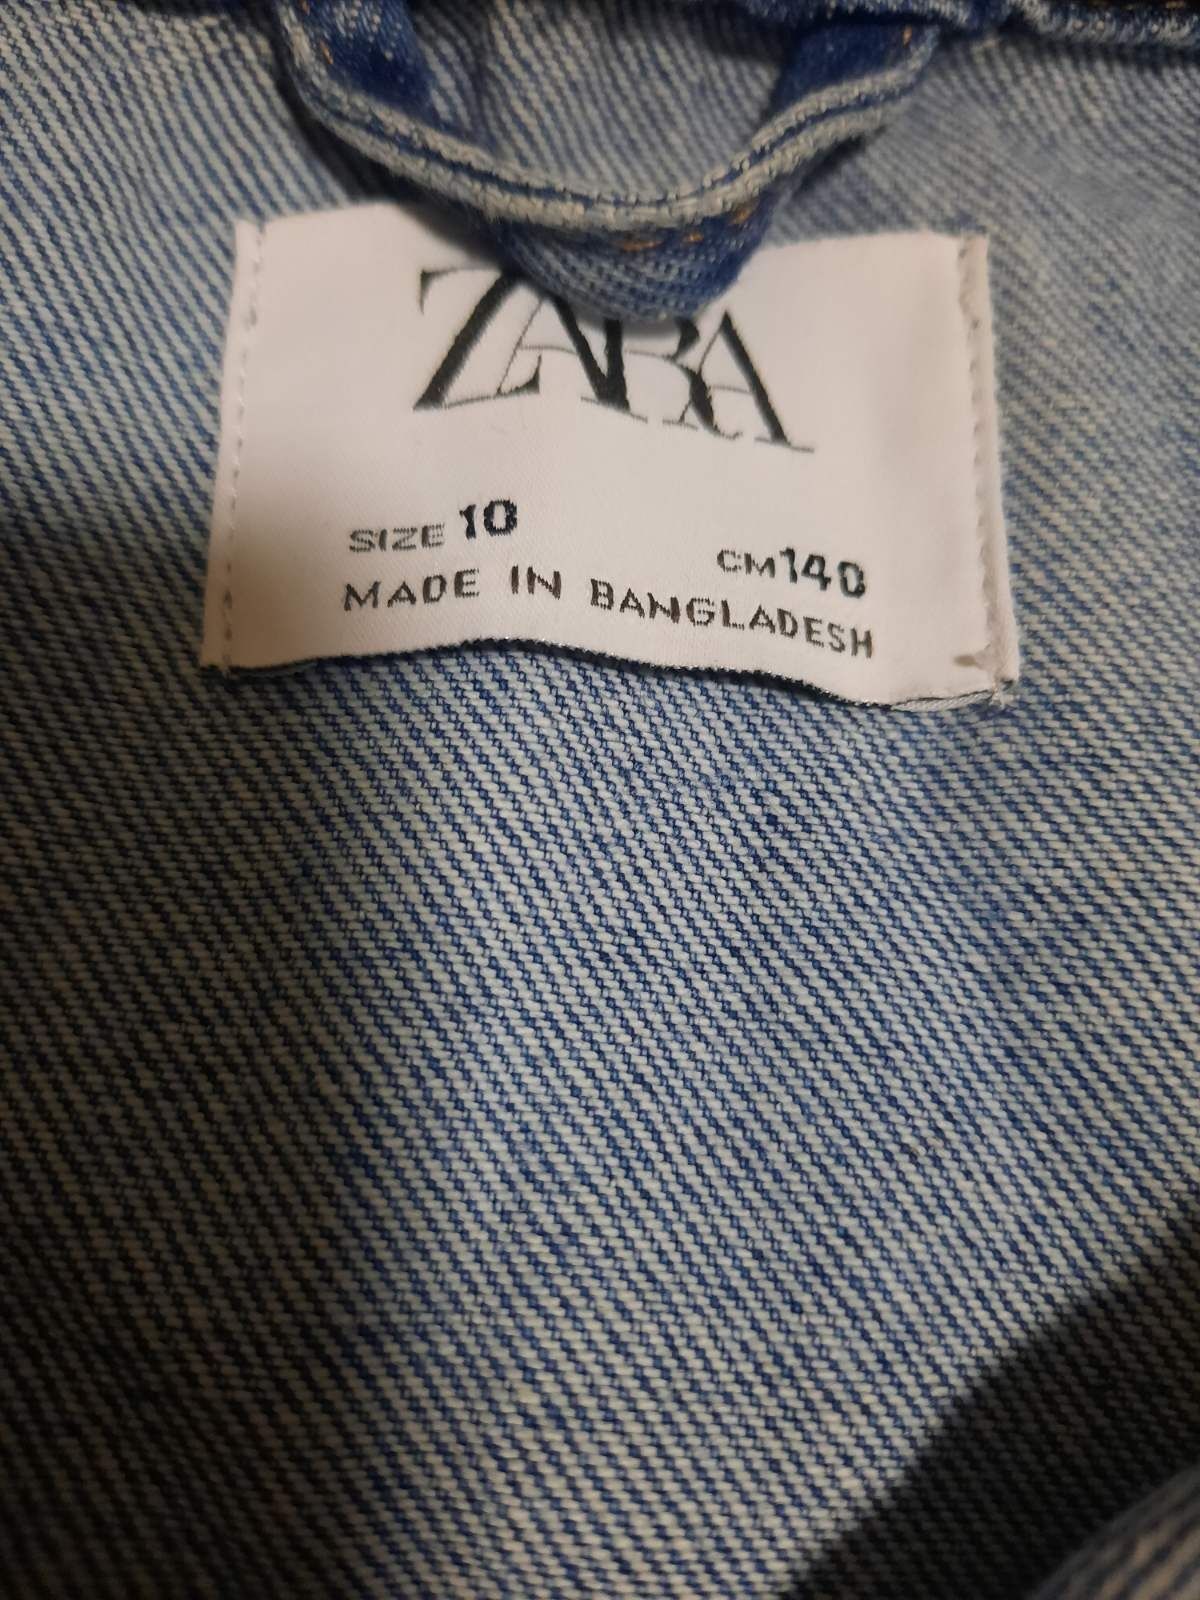 Продам джинсовый пиджак для девочек фирмы ZARA